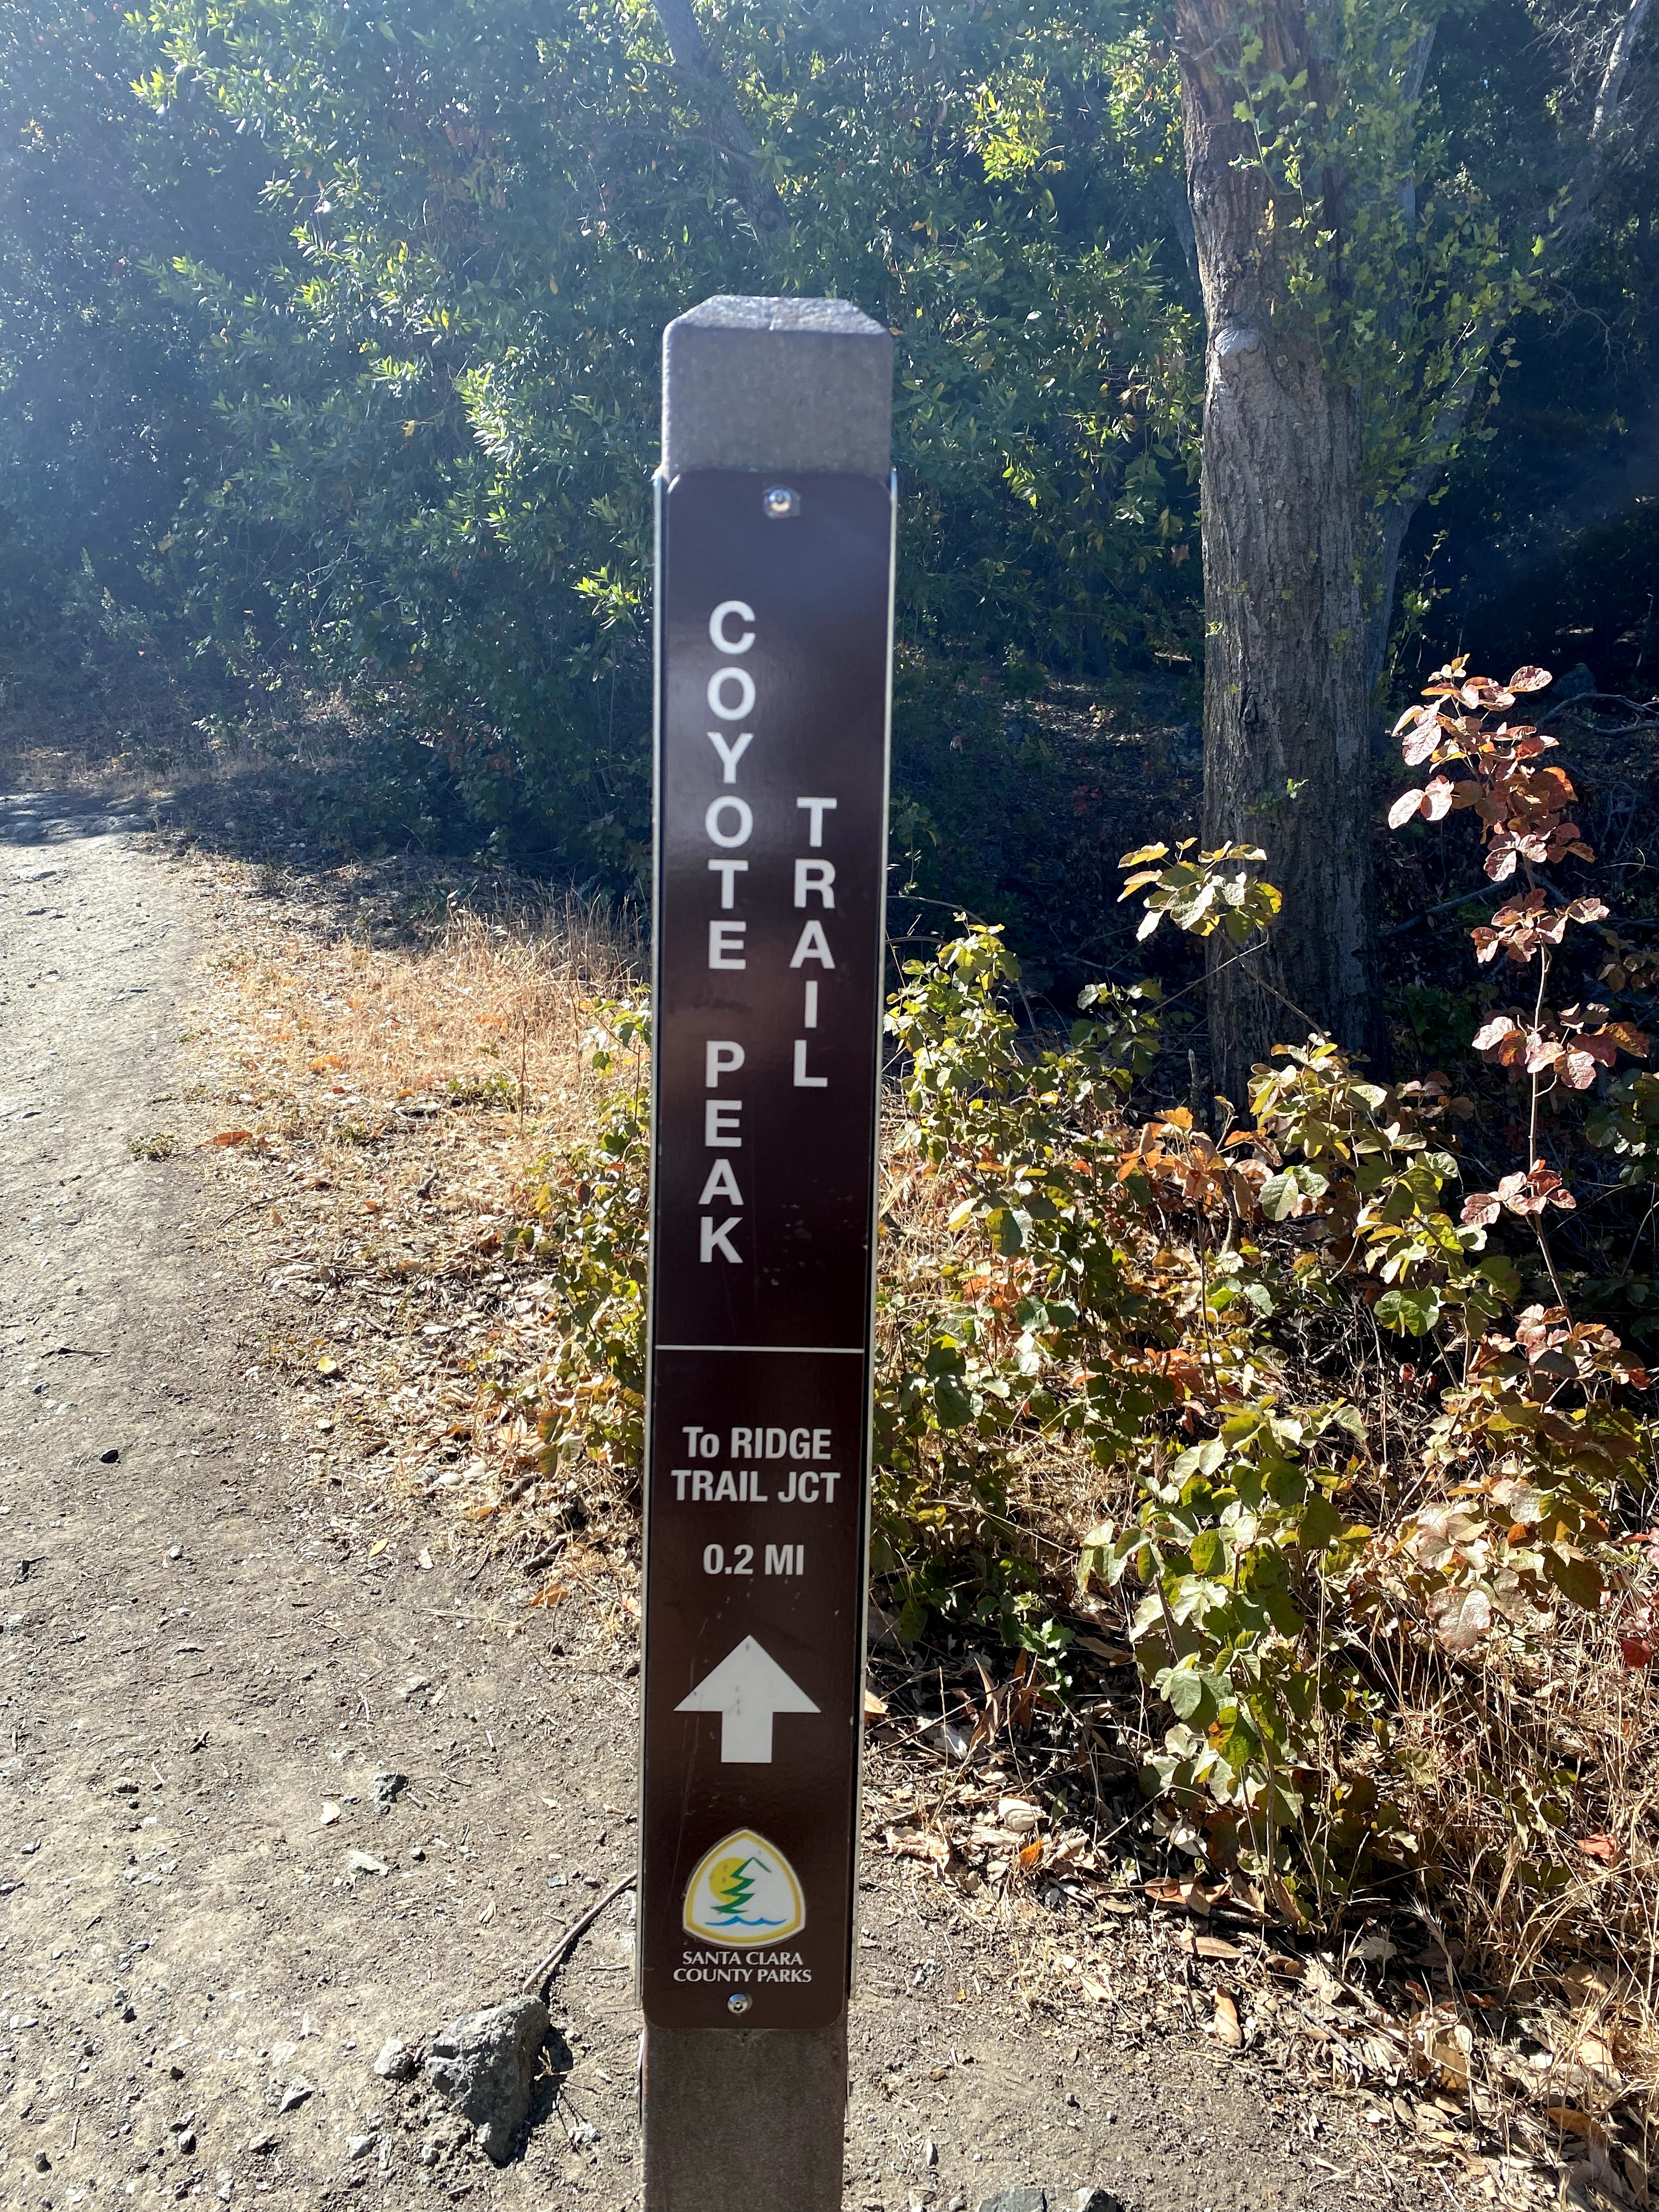 Coyote Peak Trail